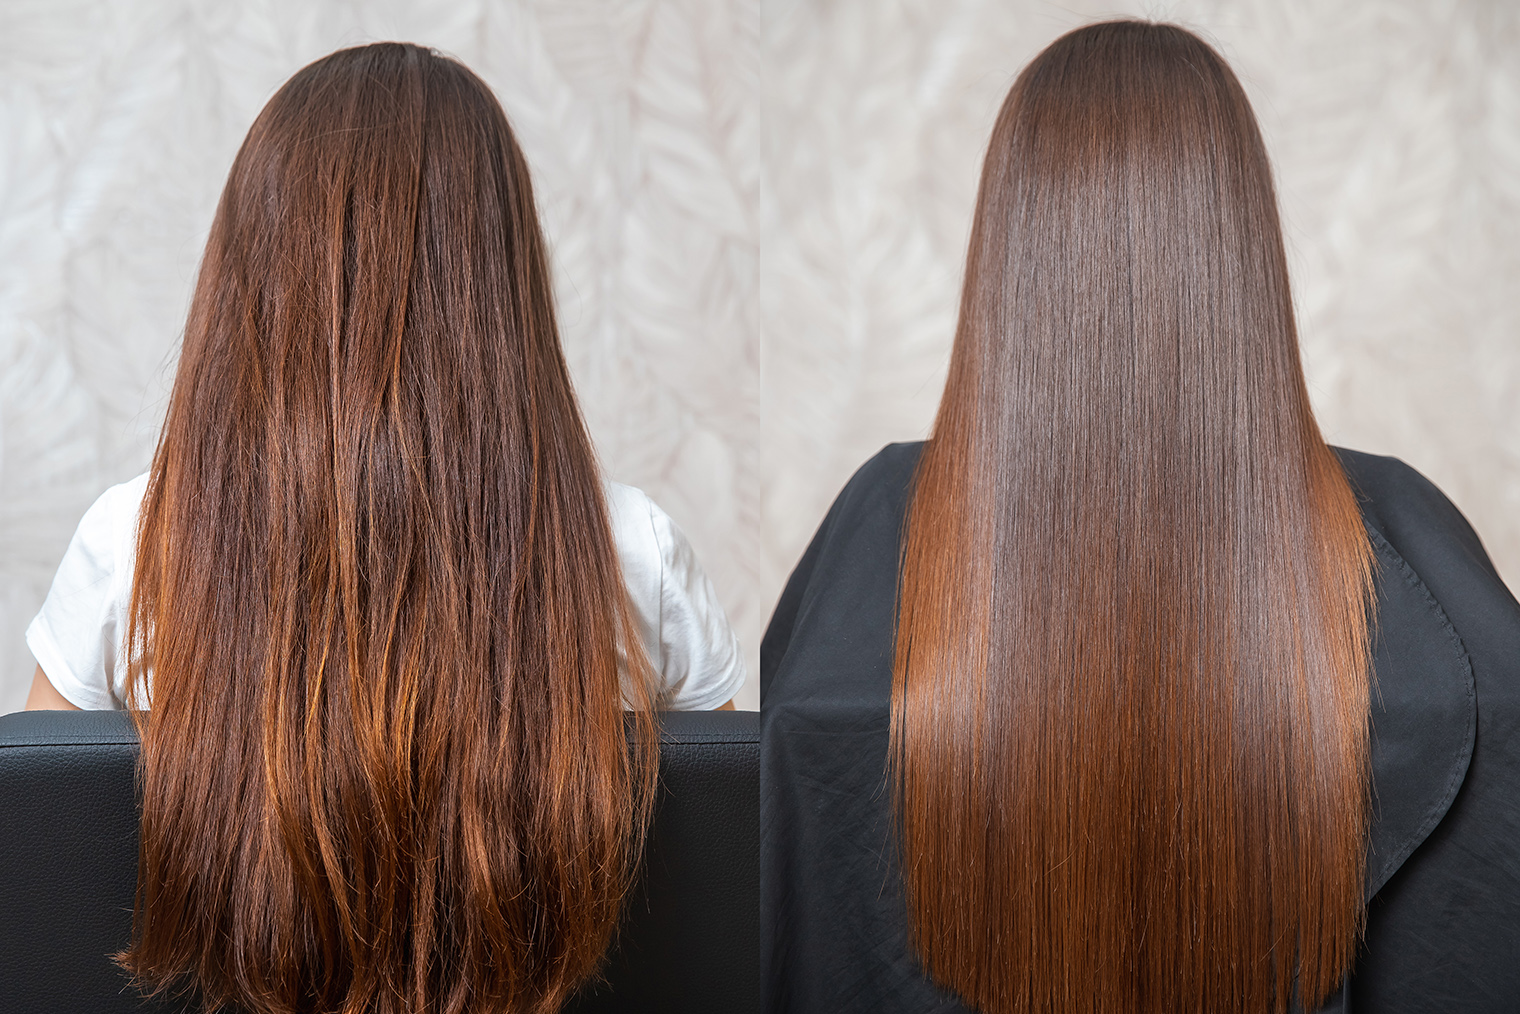 Так выглядят волосы до и после кератинового выпрямления. Источник: Parilov / Shutterstock